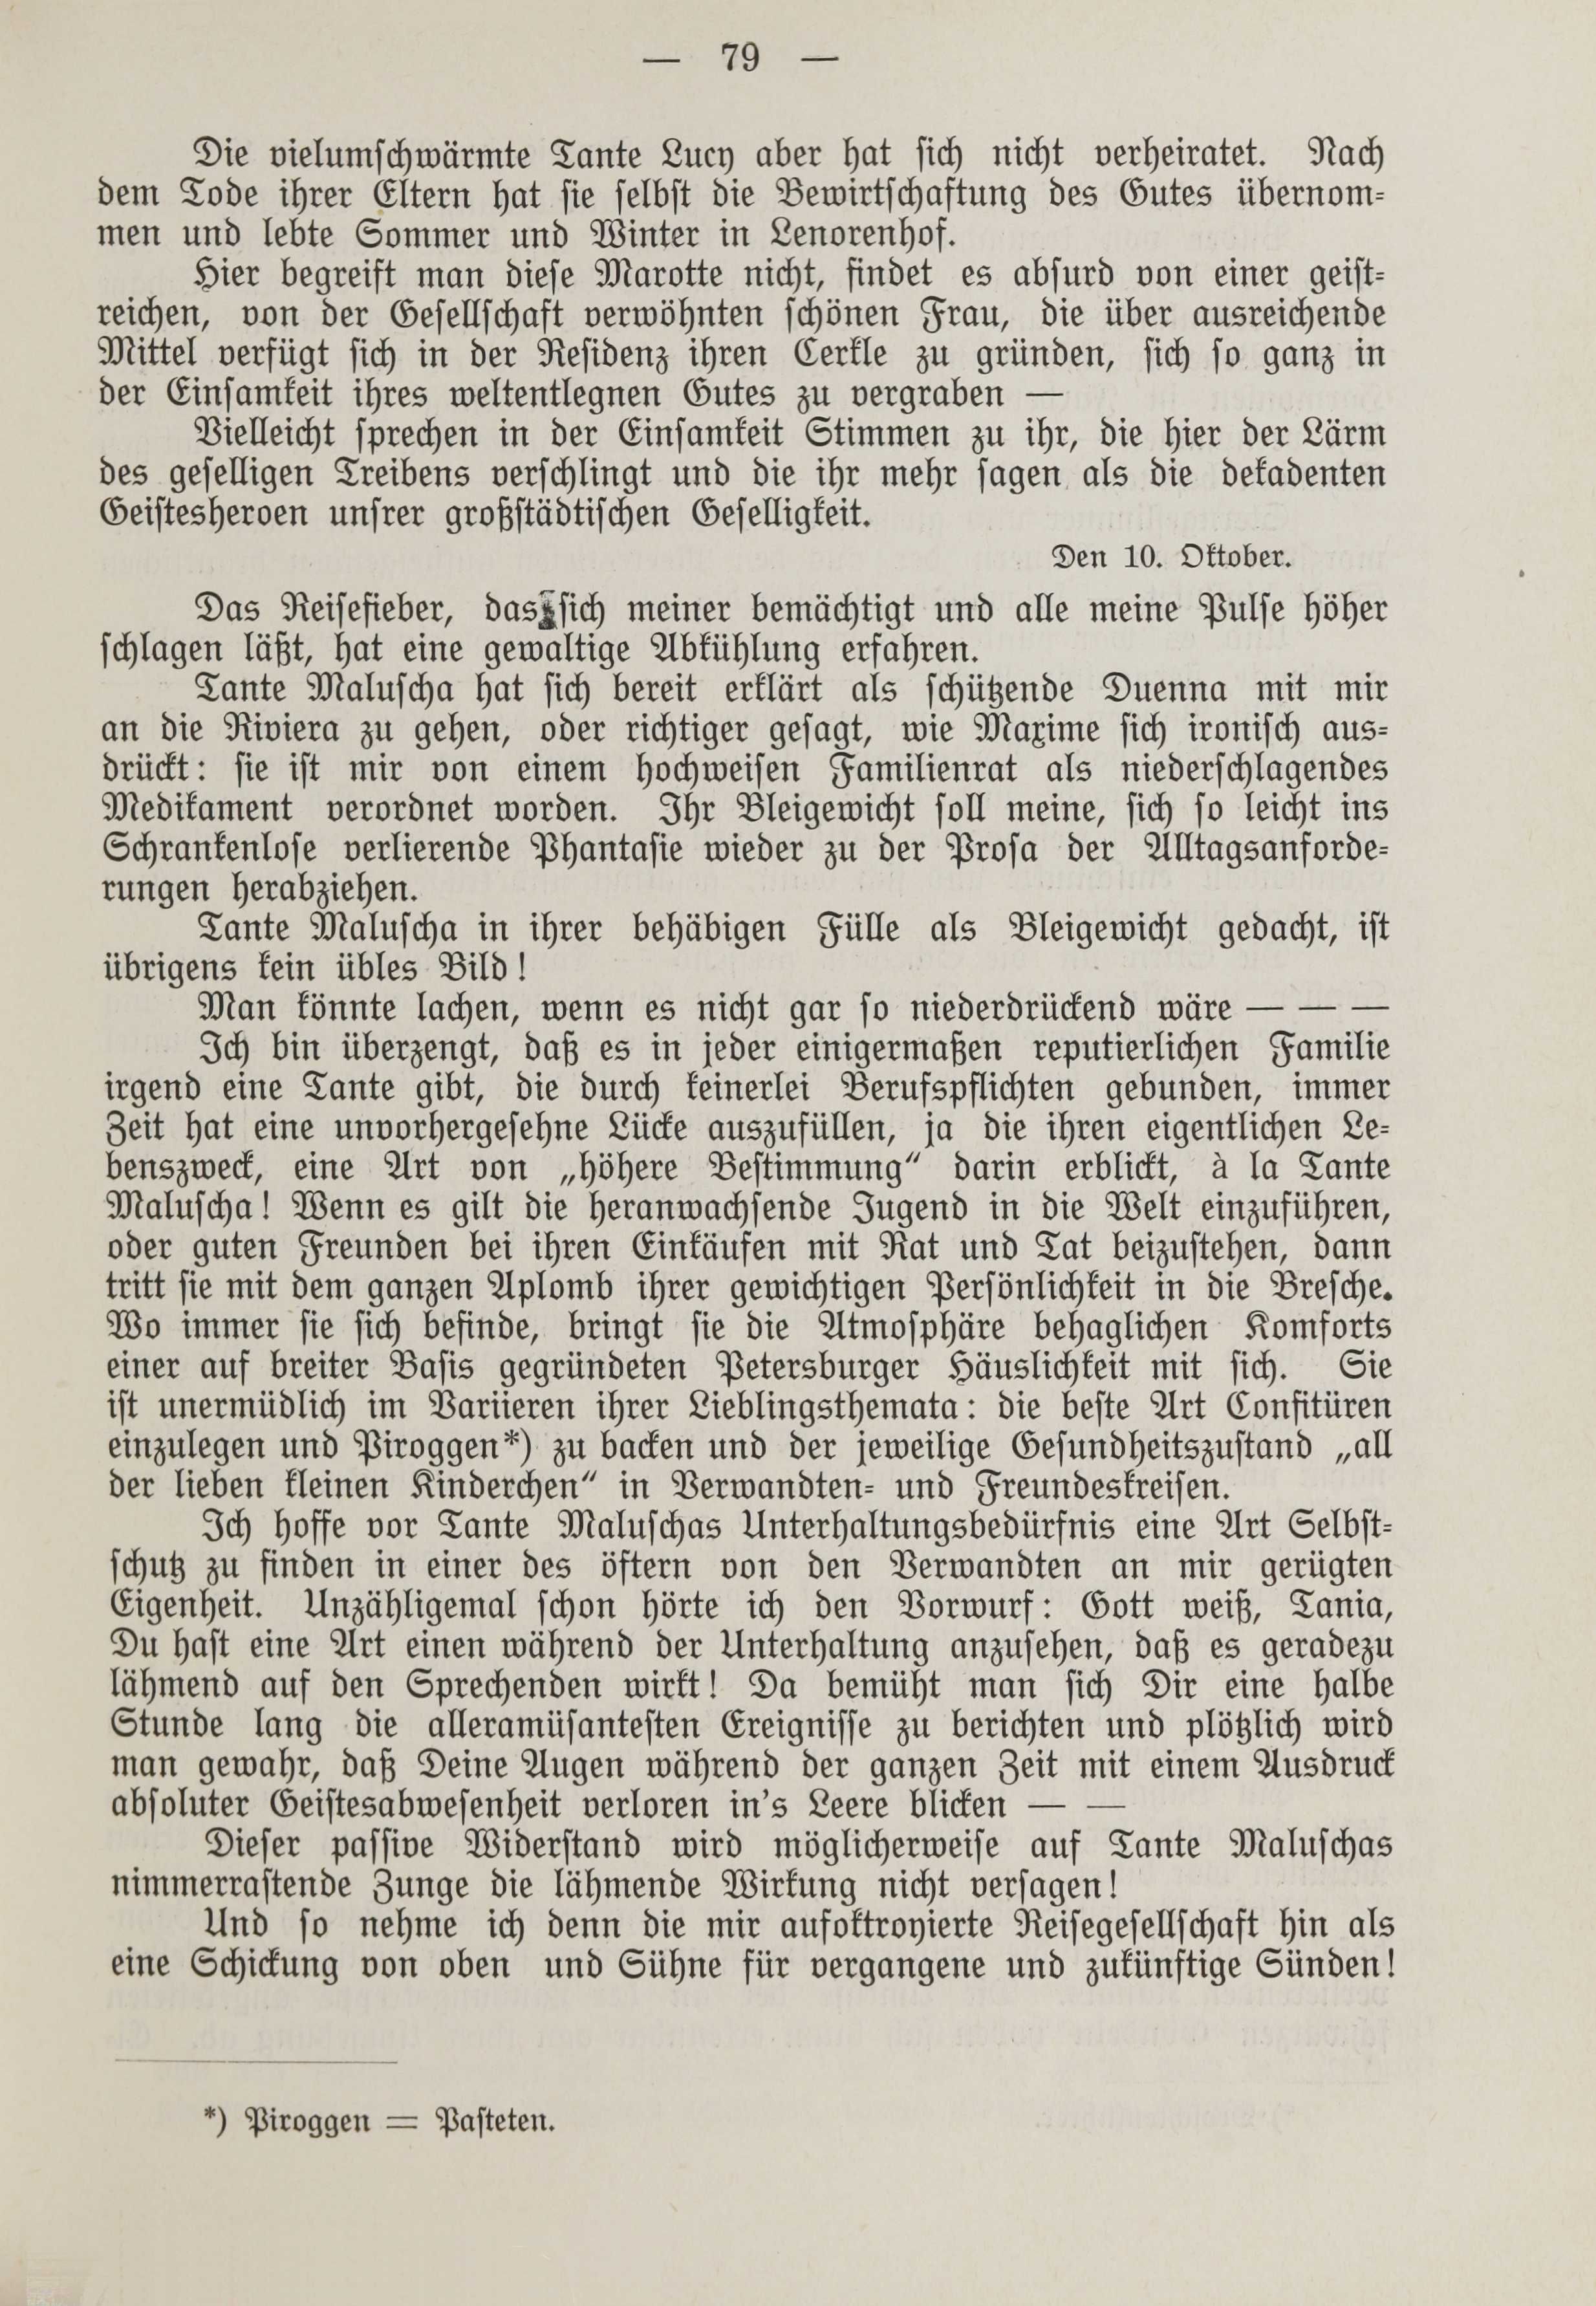 Deutsche Monatsschrift für Russland [1] (1912) | 86. (79) Põhitekst